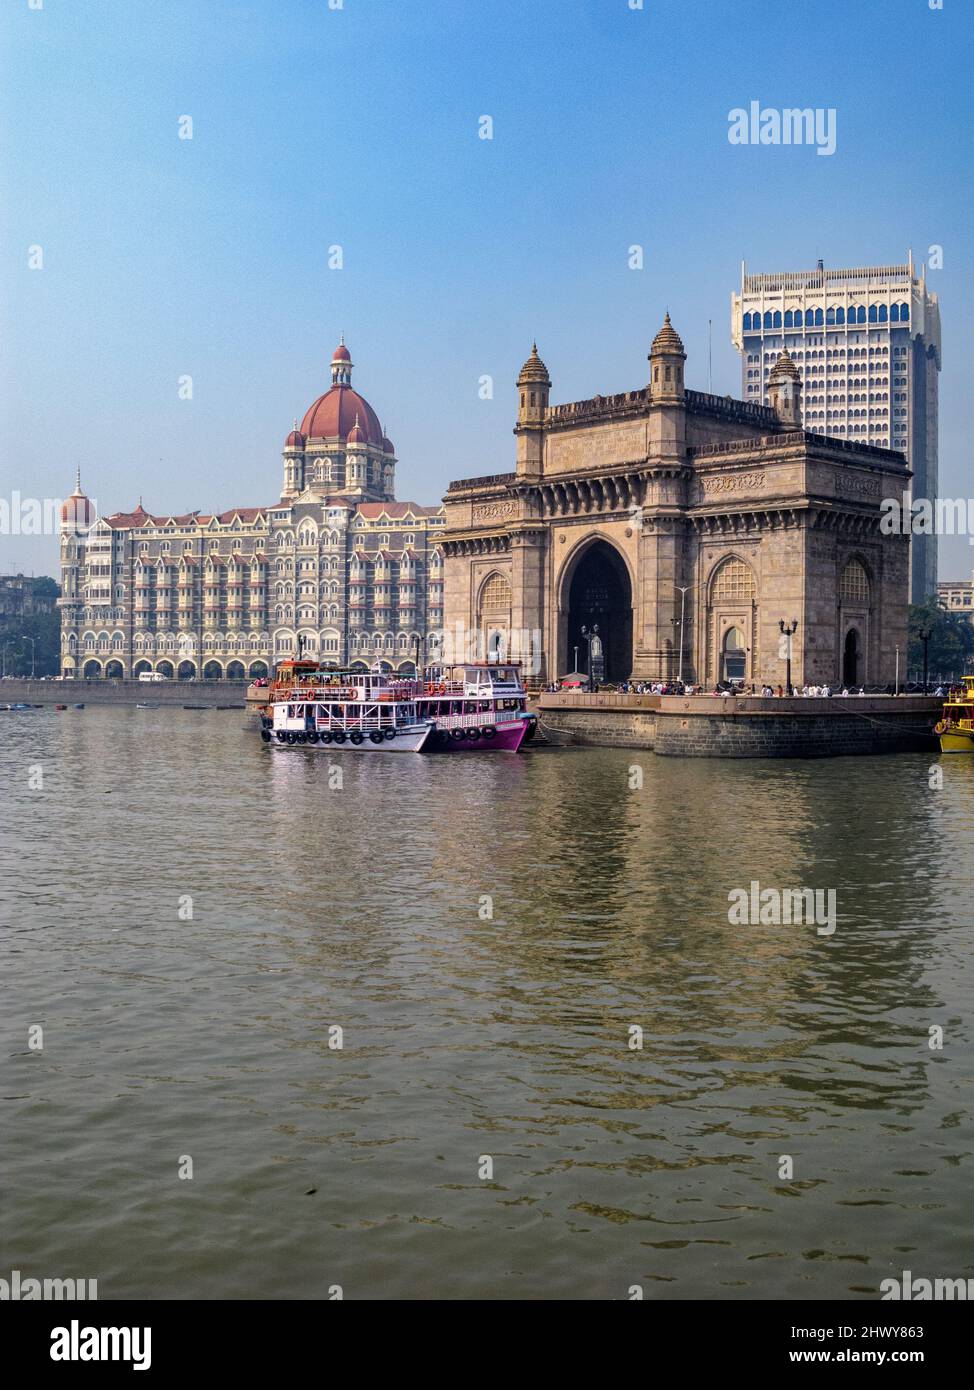 India, Maharashtra, Mumbai. La puerta de entrada de la India, el Taj Mahal Palace Hotel y el Taj Mahal Tower Hotel. Foto de stock